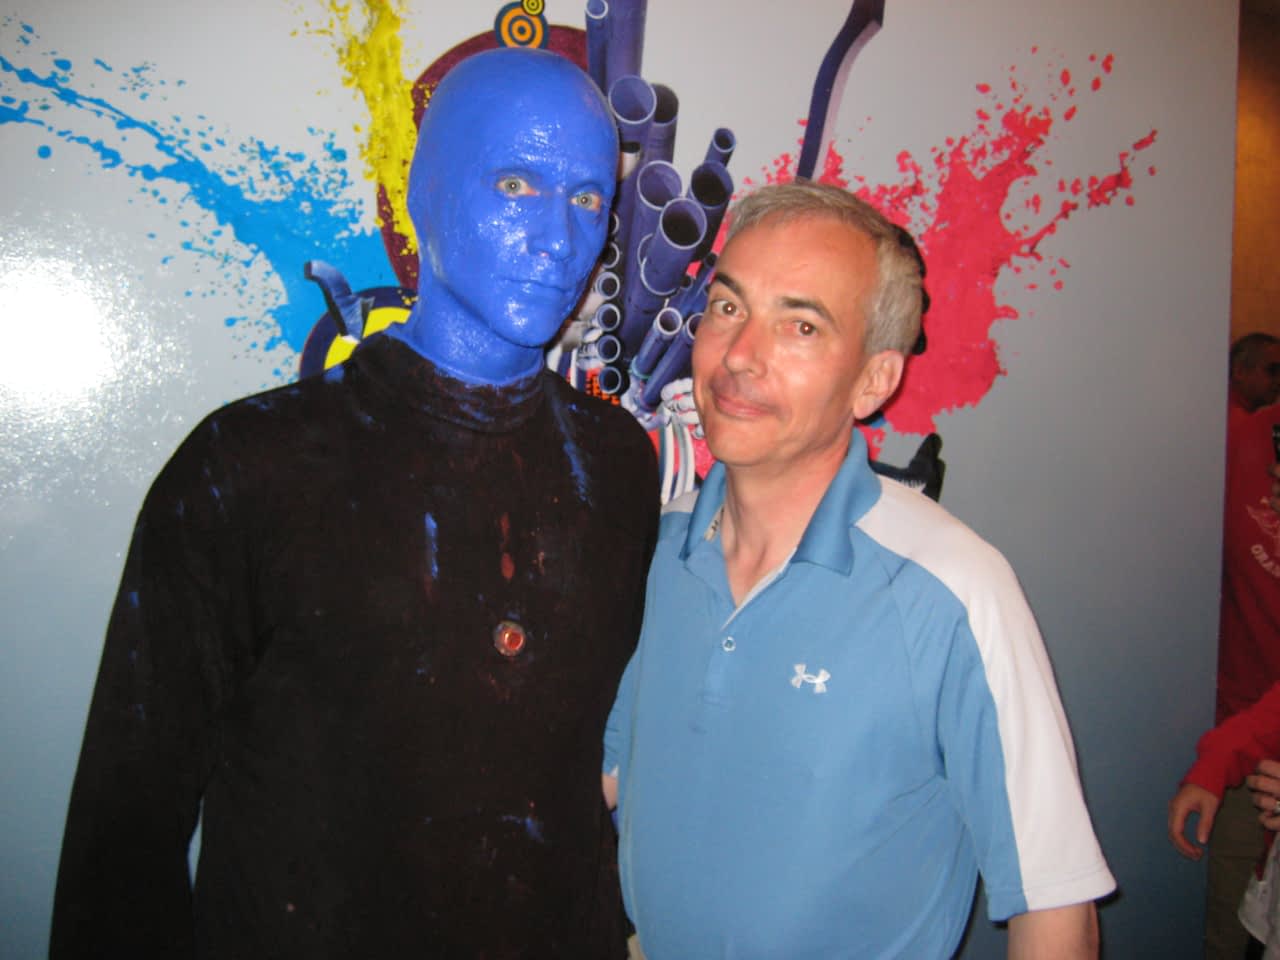 Dr. Warner + Blue Man